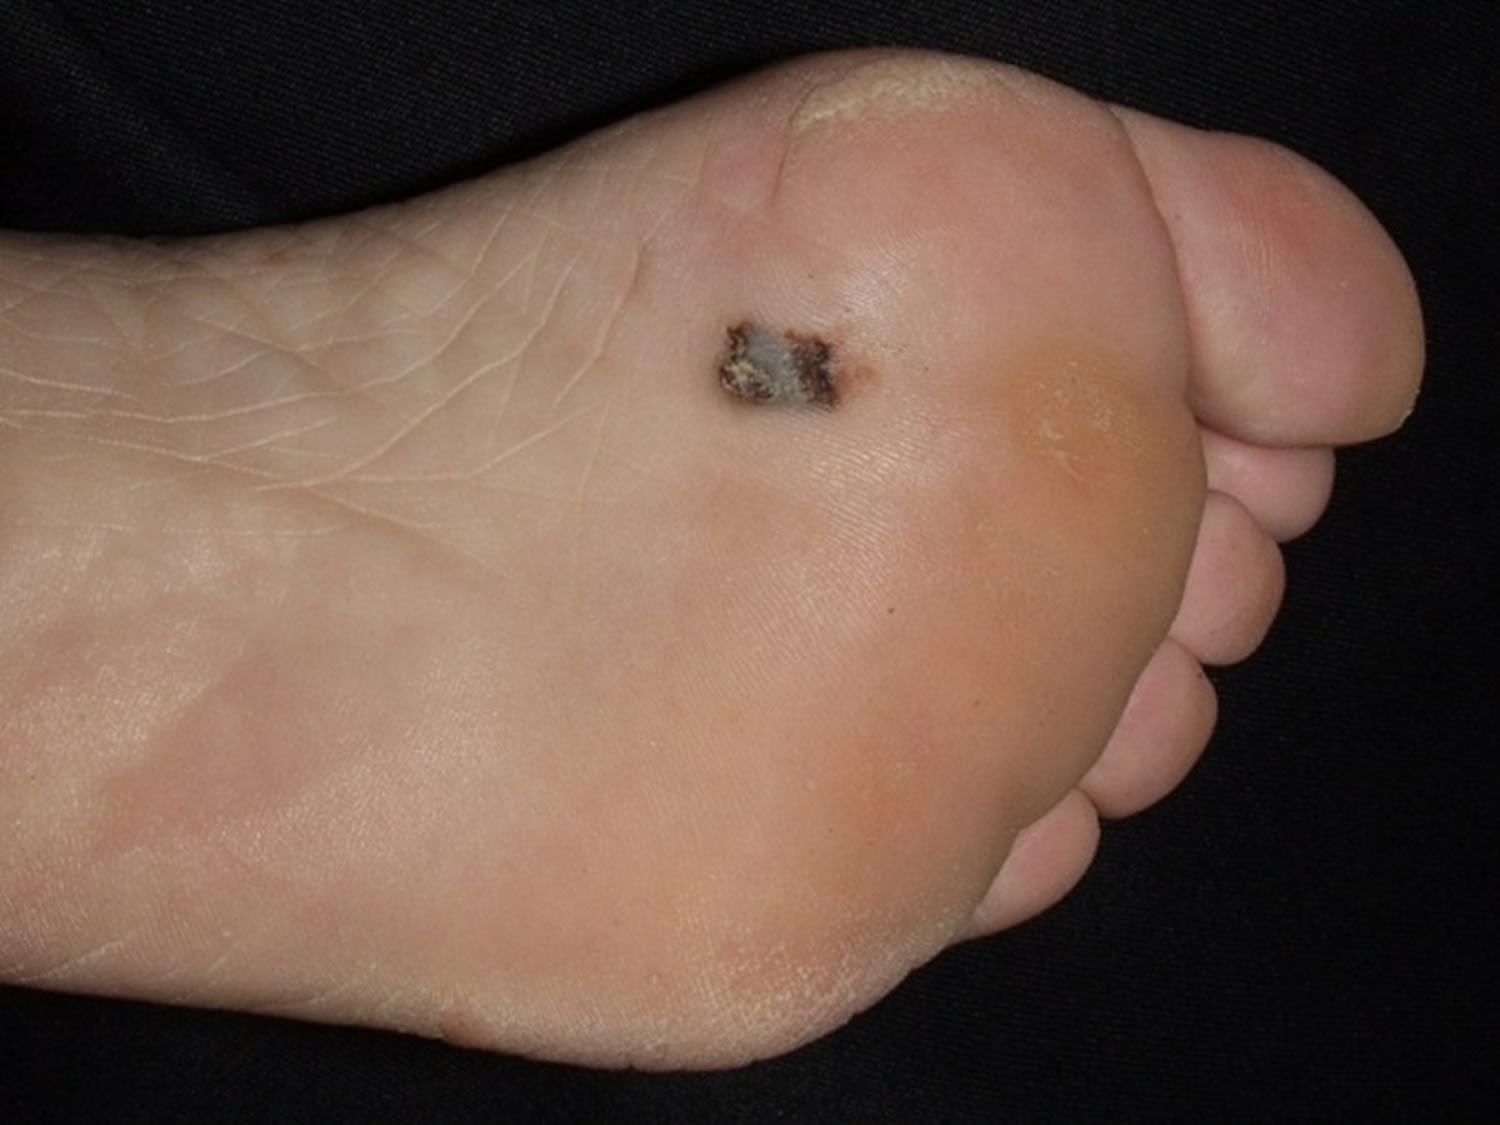 Acral lentiginous melanoma foot